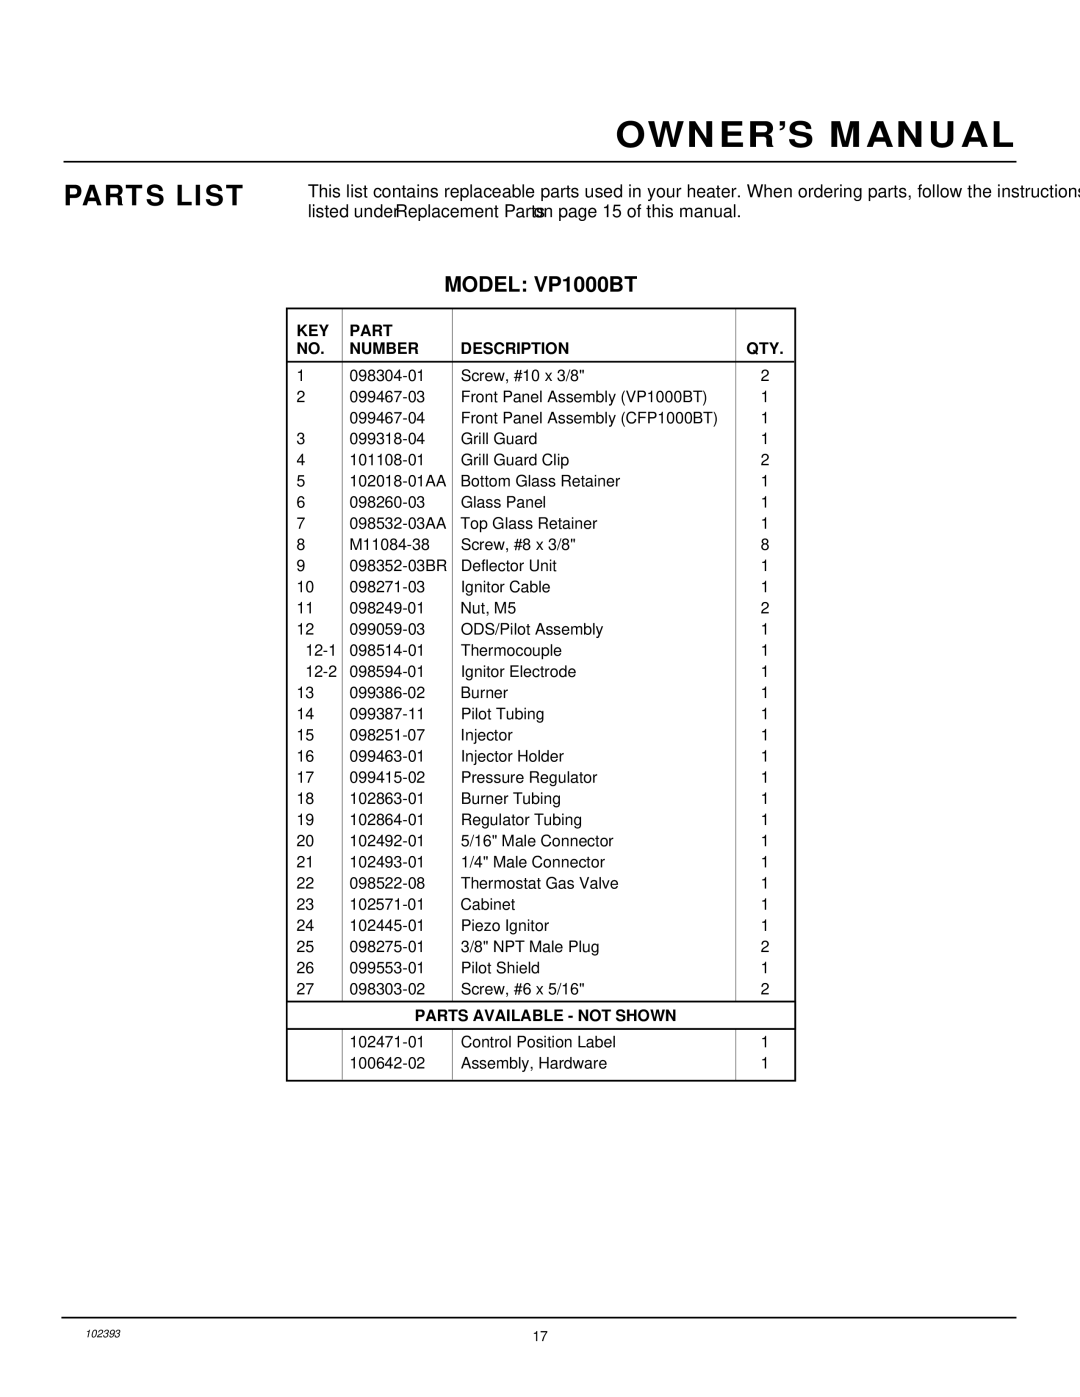 Desa installation manual Parts List, Model VP1000BT 